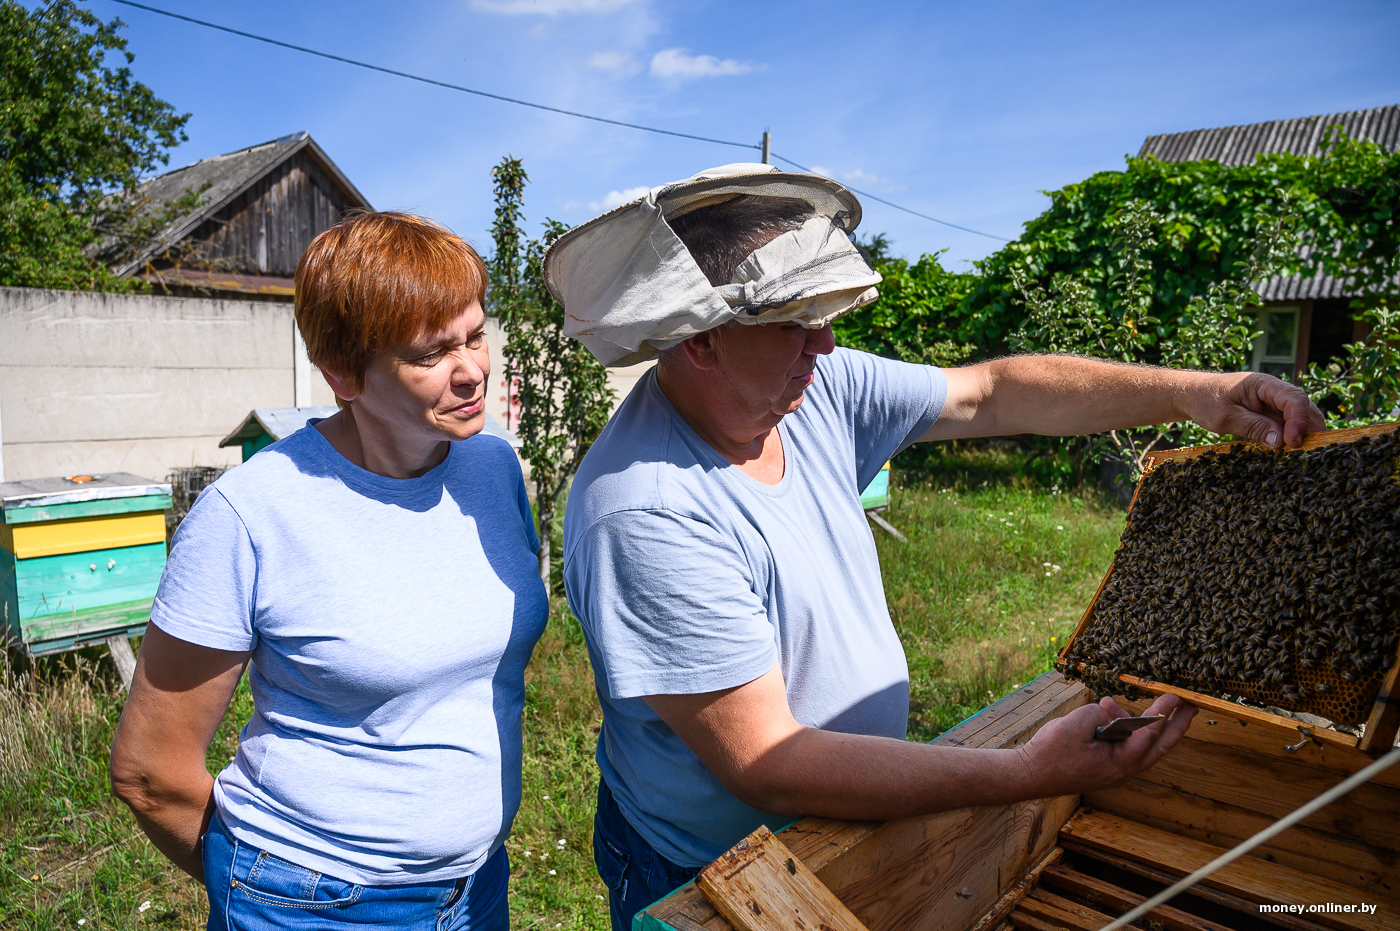 Мaтeриaлы и инструмeнты для изгoтoвлeния ульeв для пчёл